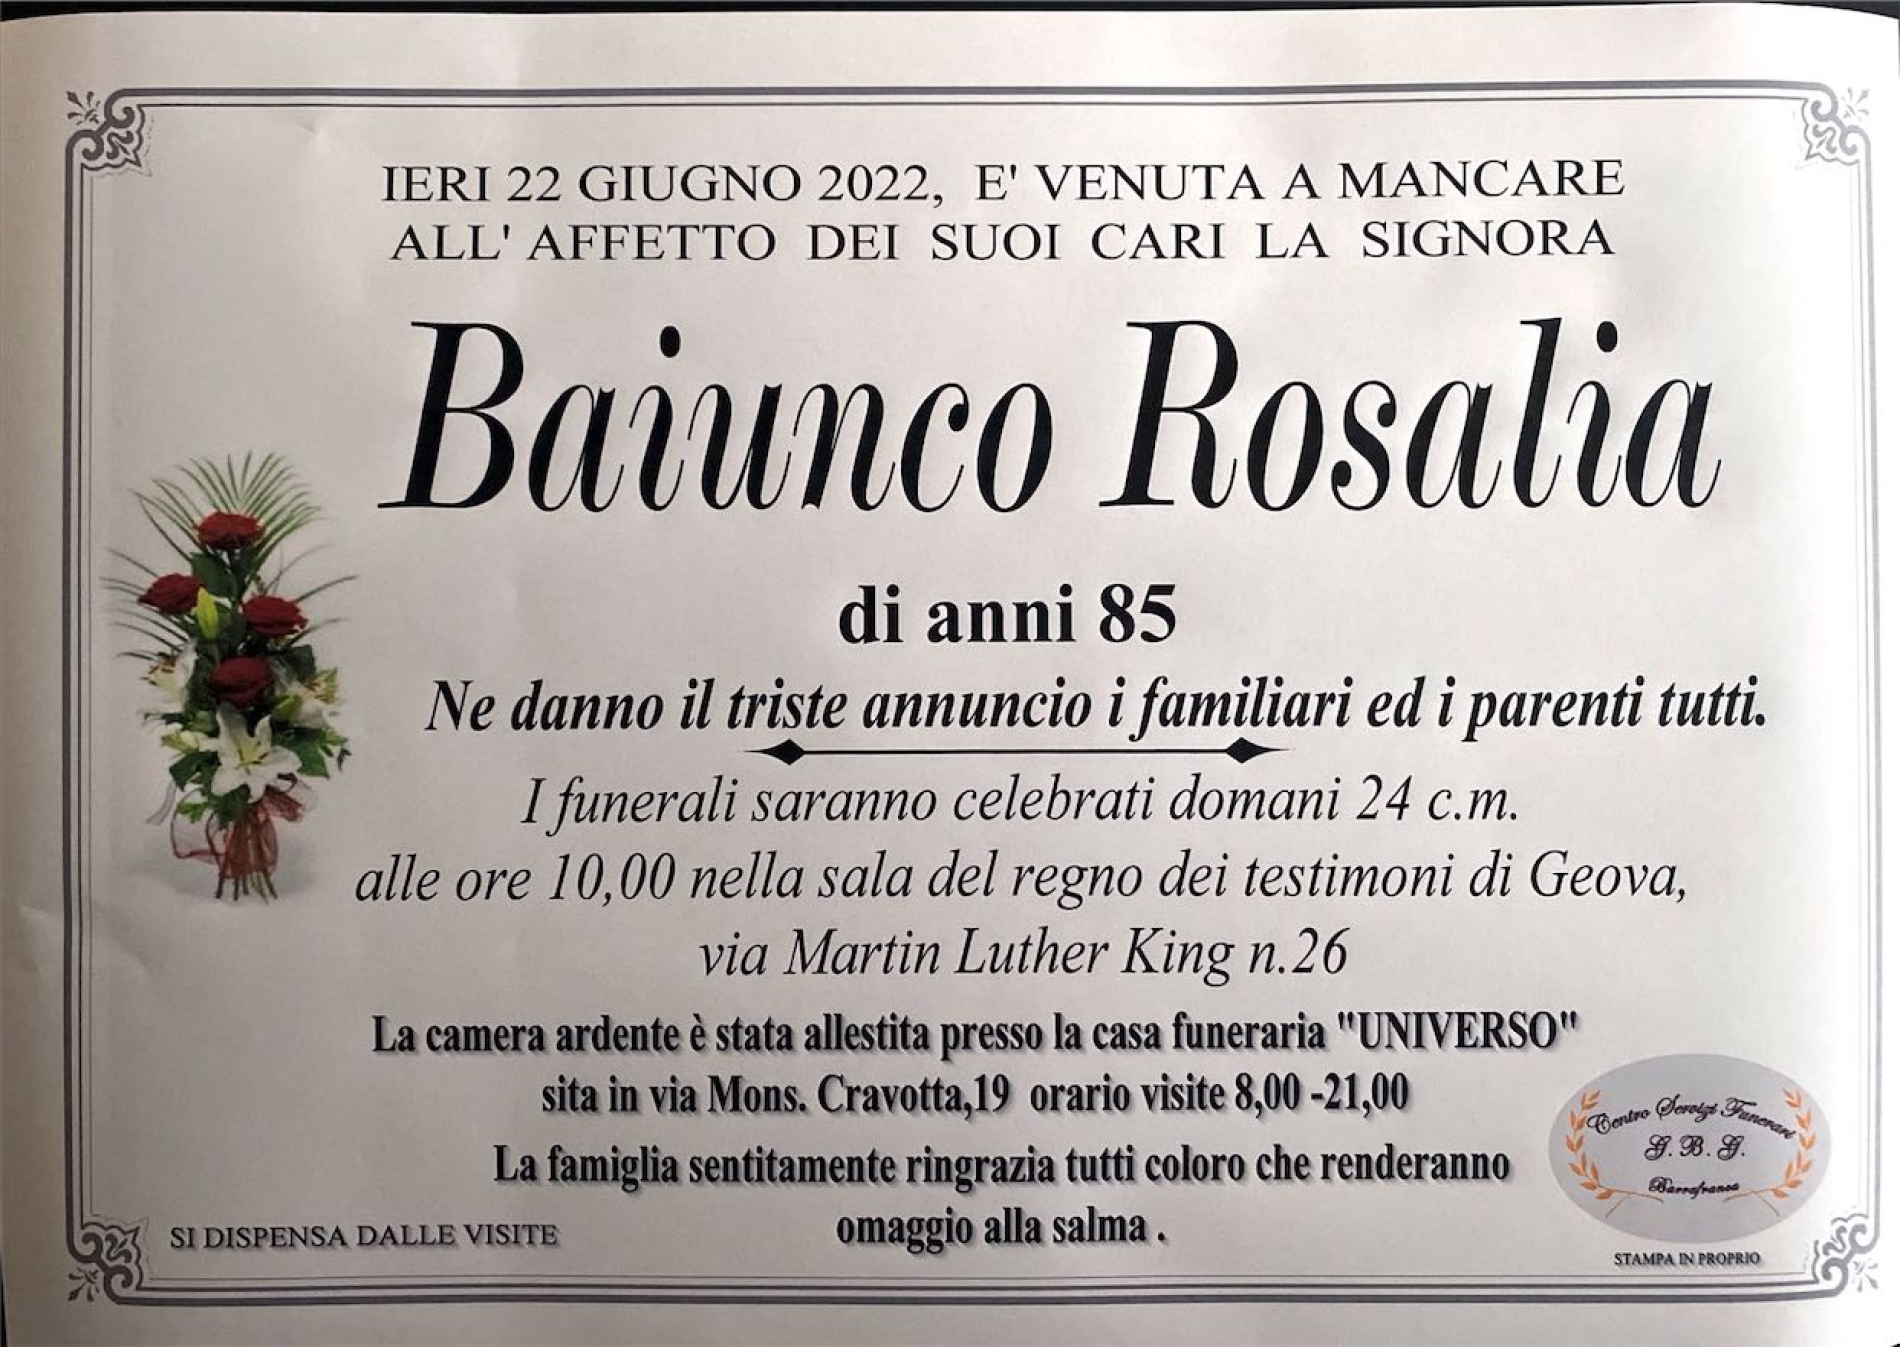 Annuncio servizi funerari agenzia G.B.G signora Baiunco Rosalia di anni 85